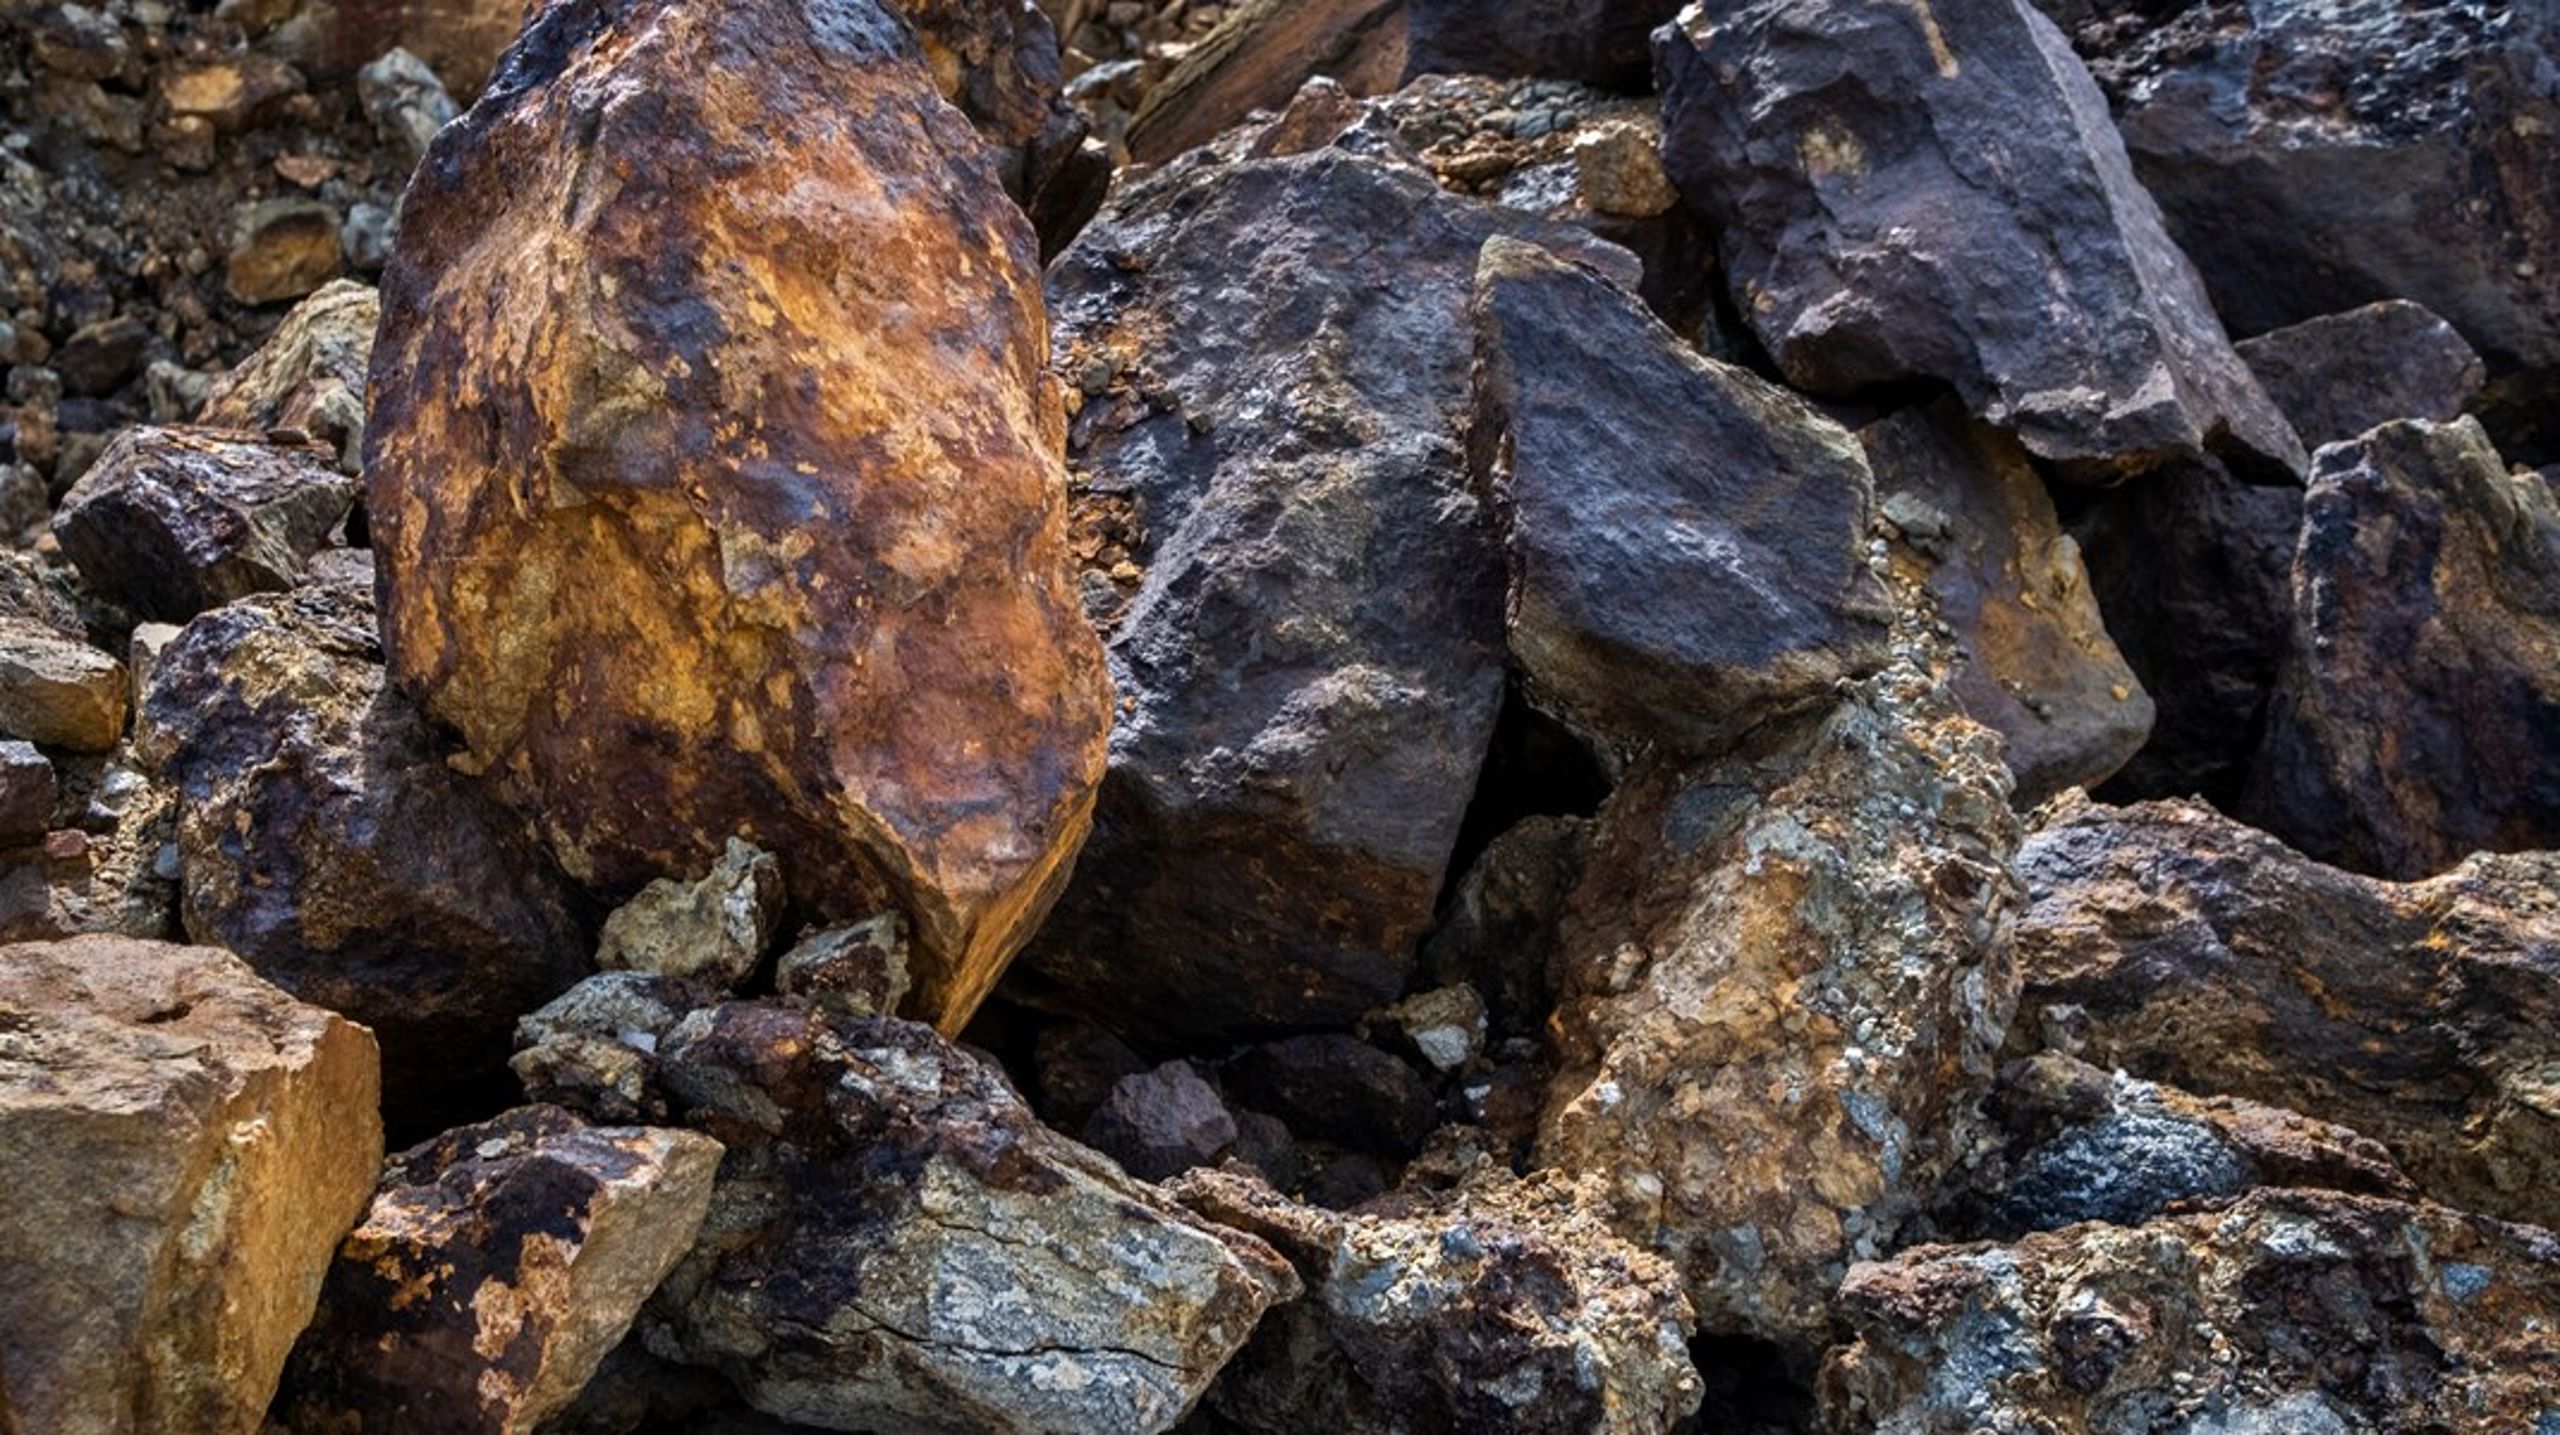 ”Av de miljardinvesteringar som sker i Norrbotten och Västerbotten kommande år står gruvsektorn för 75 procent.”